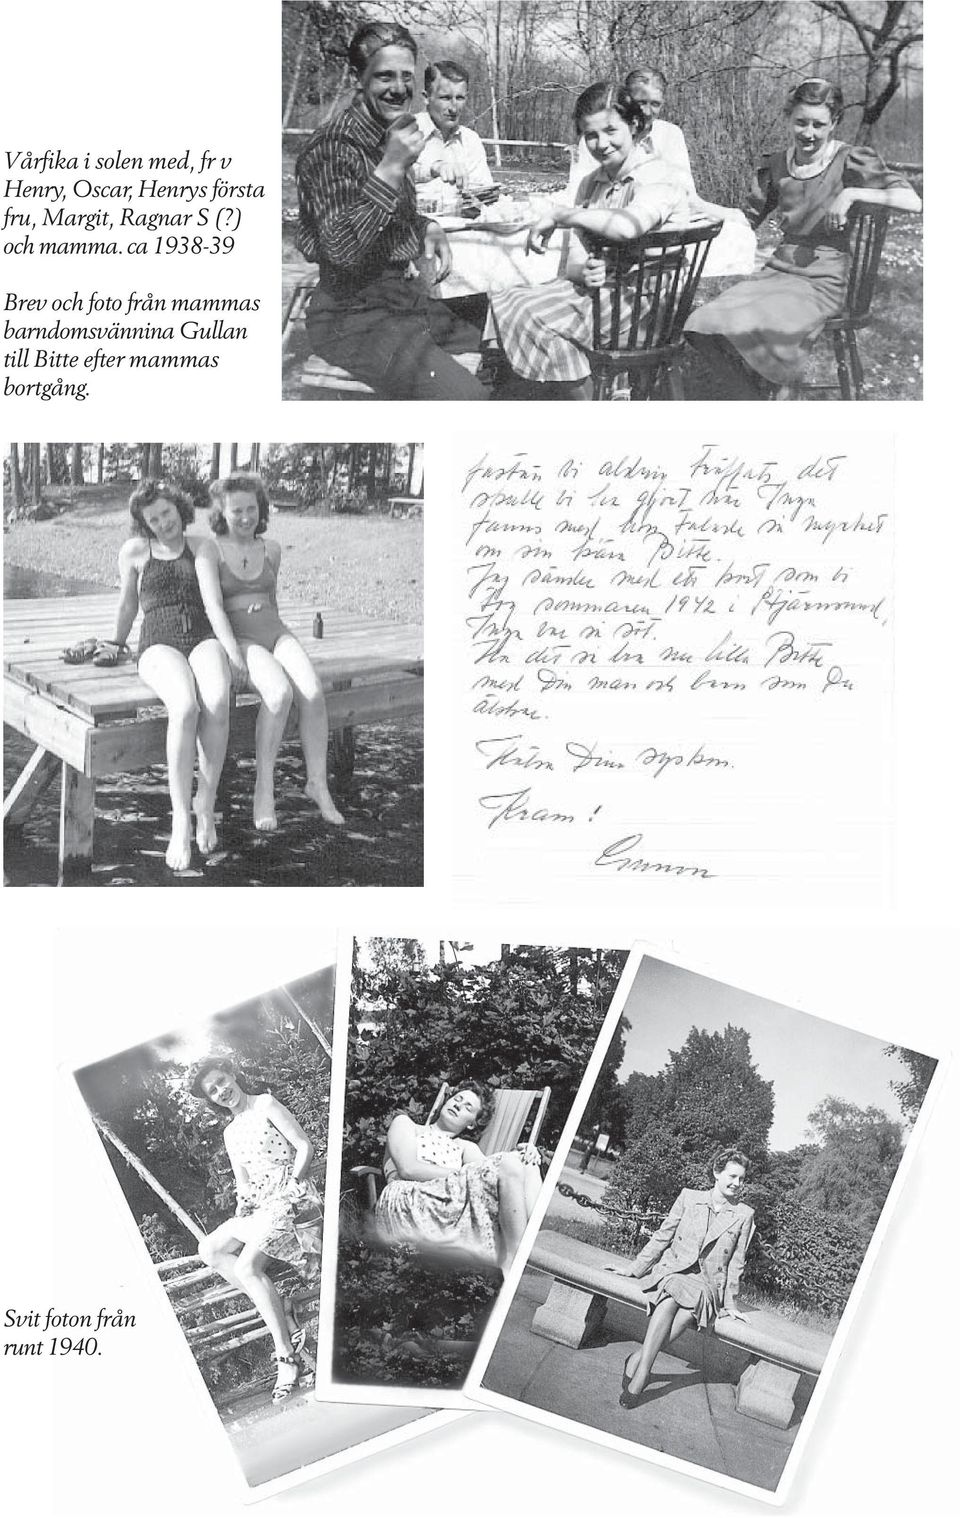 ca 1938-39 Brev och foto från mammas barndomsvännina